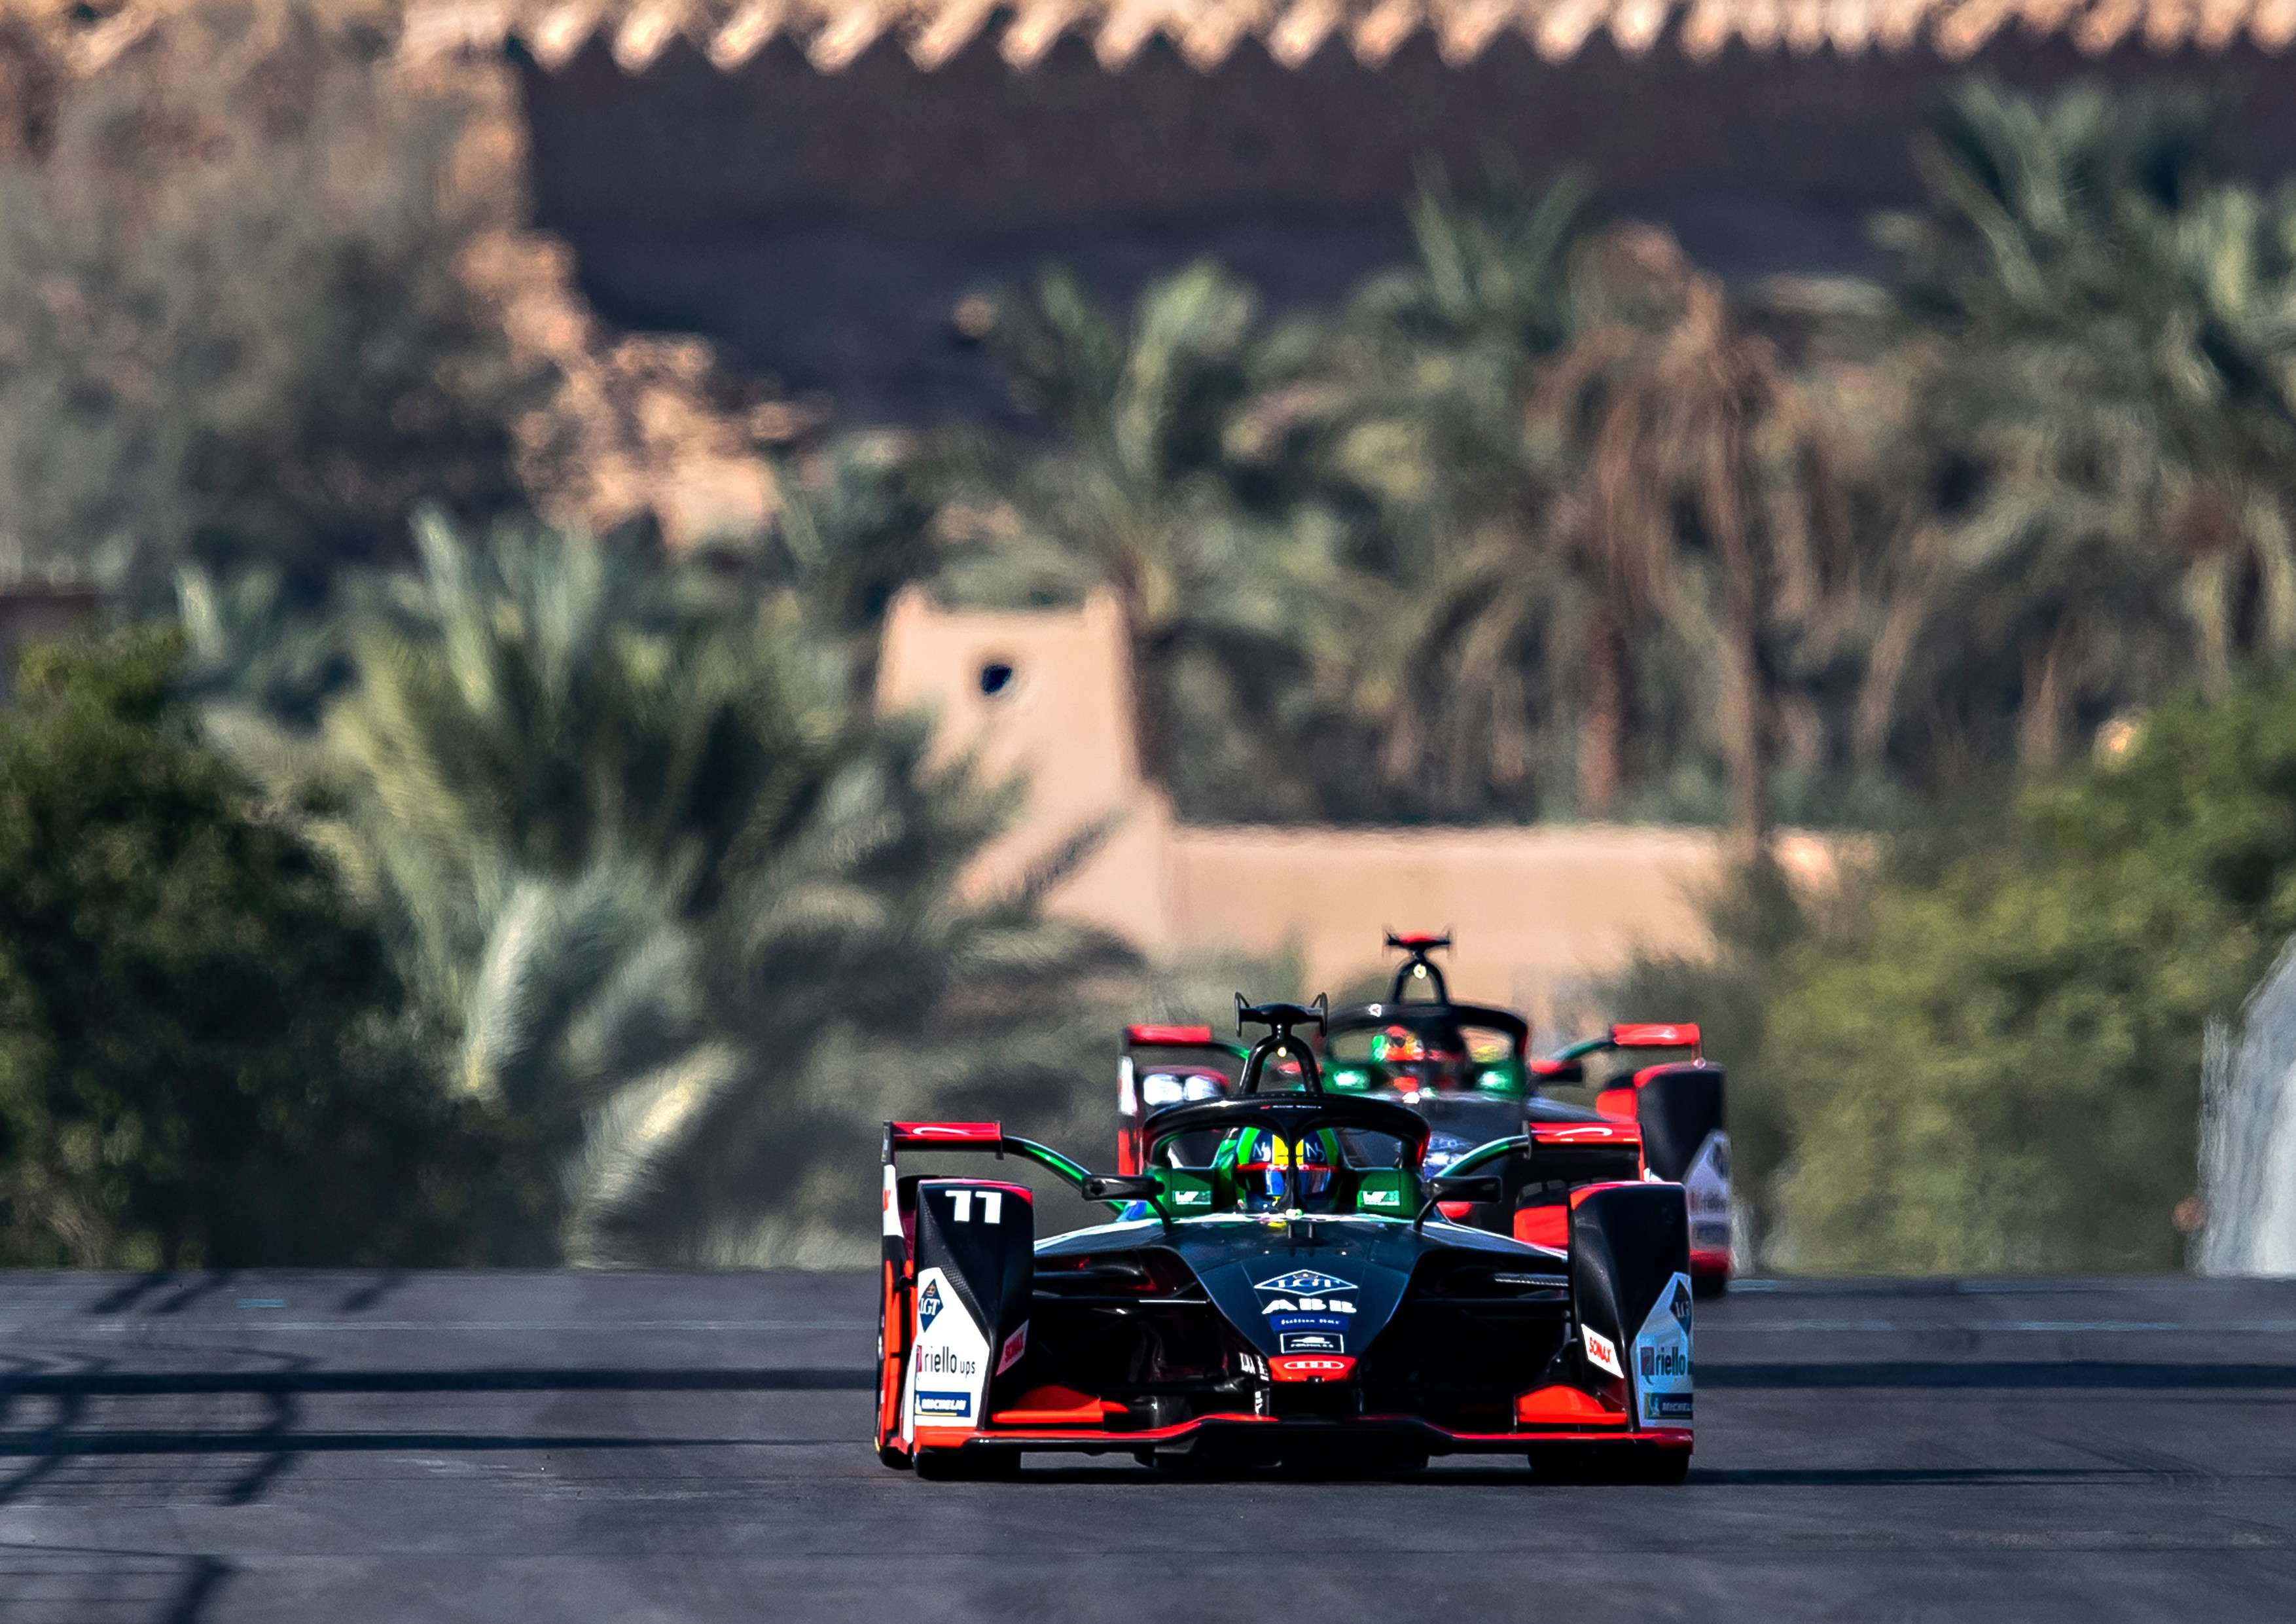 لوكاس دي جراسي يحلّ ثانياً في سباق فورمولا إي الرياض